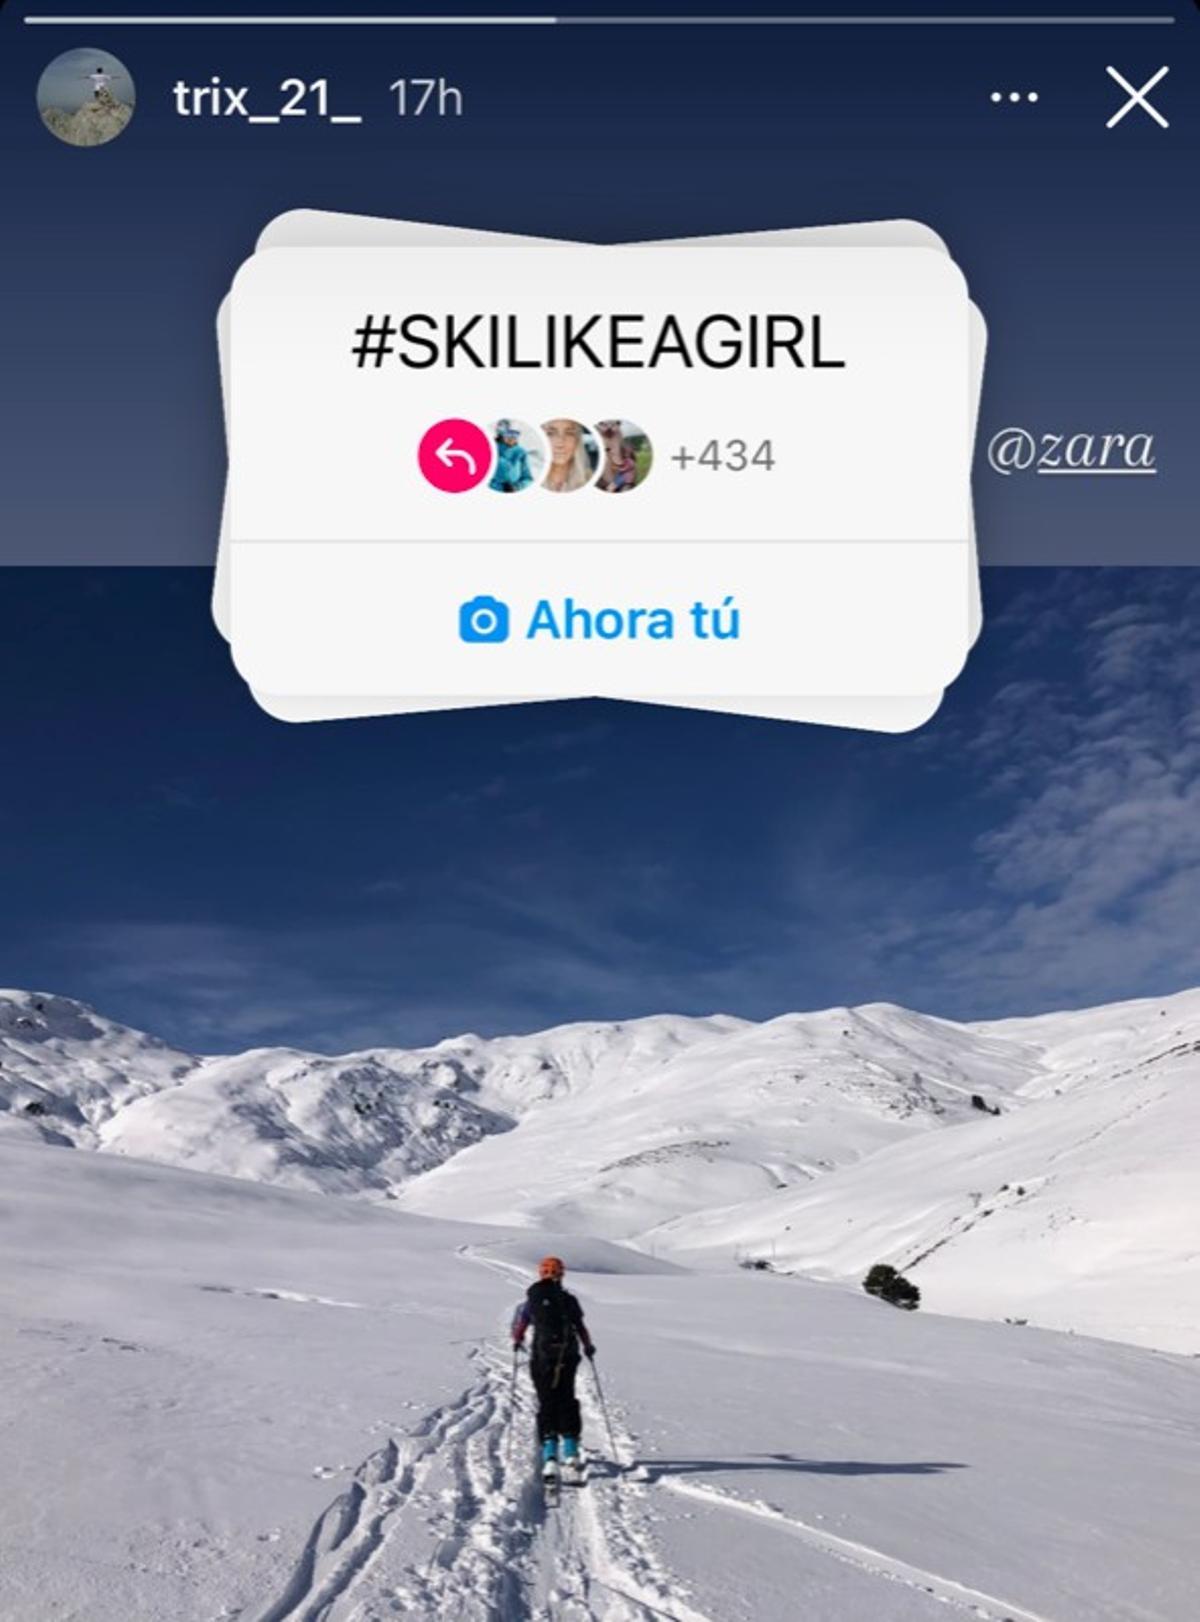 La usuaria @trix_21_ muestra cómo esquía en Instagram en la campaña reivindicativa @SkiLikeAGirl